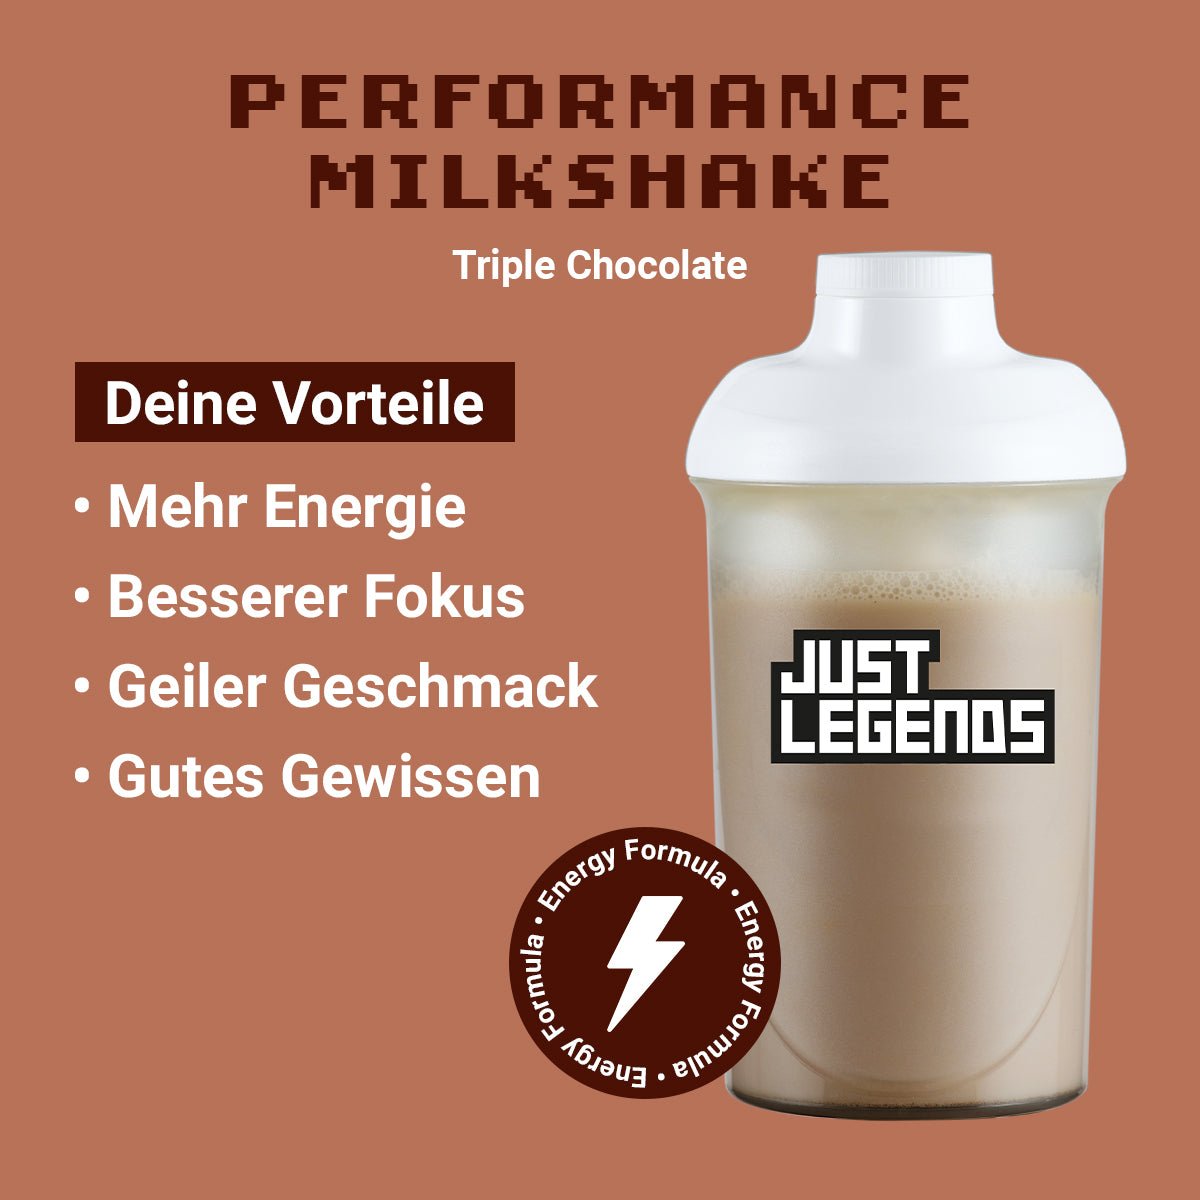 Just Legends Performance Milkshake Triple Chocolate | Funktionaler, veganer Performance Milkshake auf Pulverbasis ohne Zucker, mit wenig Kalorien, vielen Vitaminen und natürlichen Aromen.